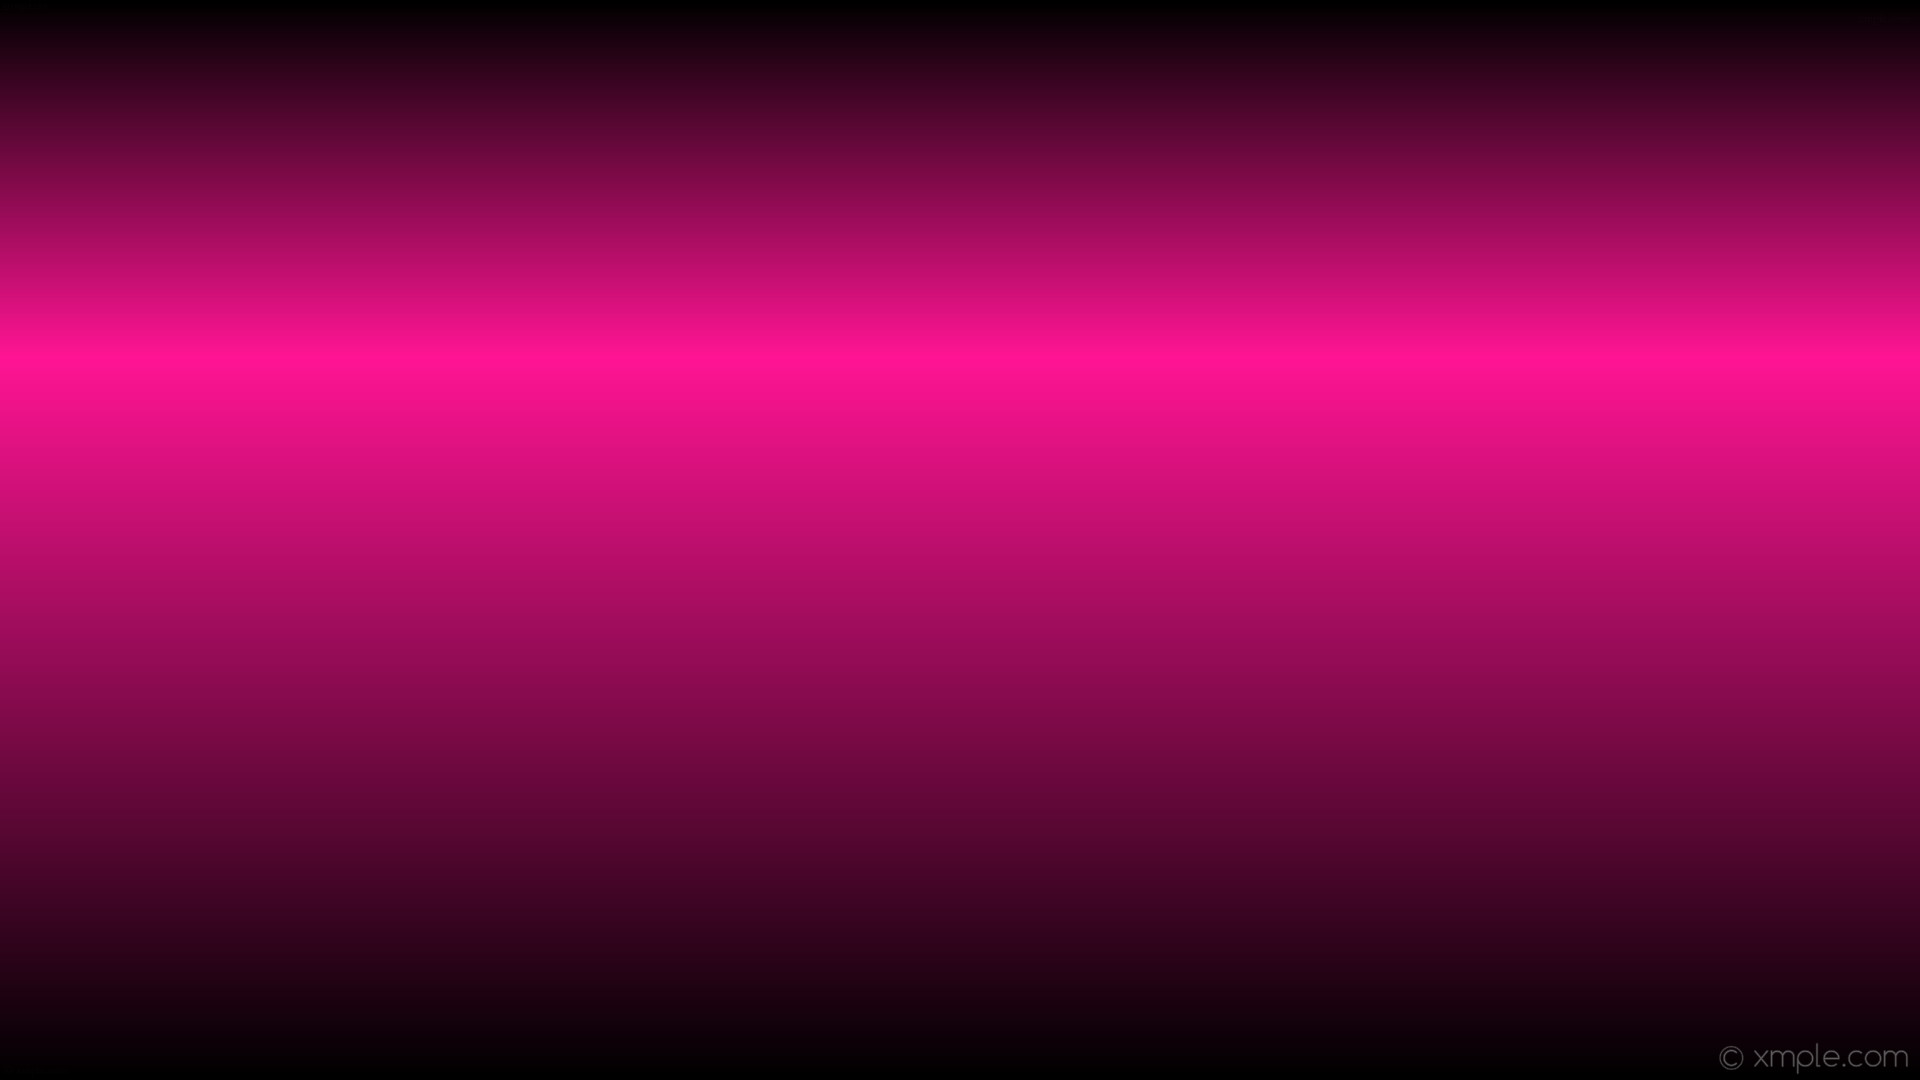 1920x1080 wallpaper pink black linear gradient highlight deep pink #000000 #ff1493  270Â° 67%